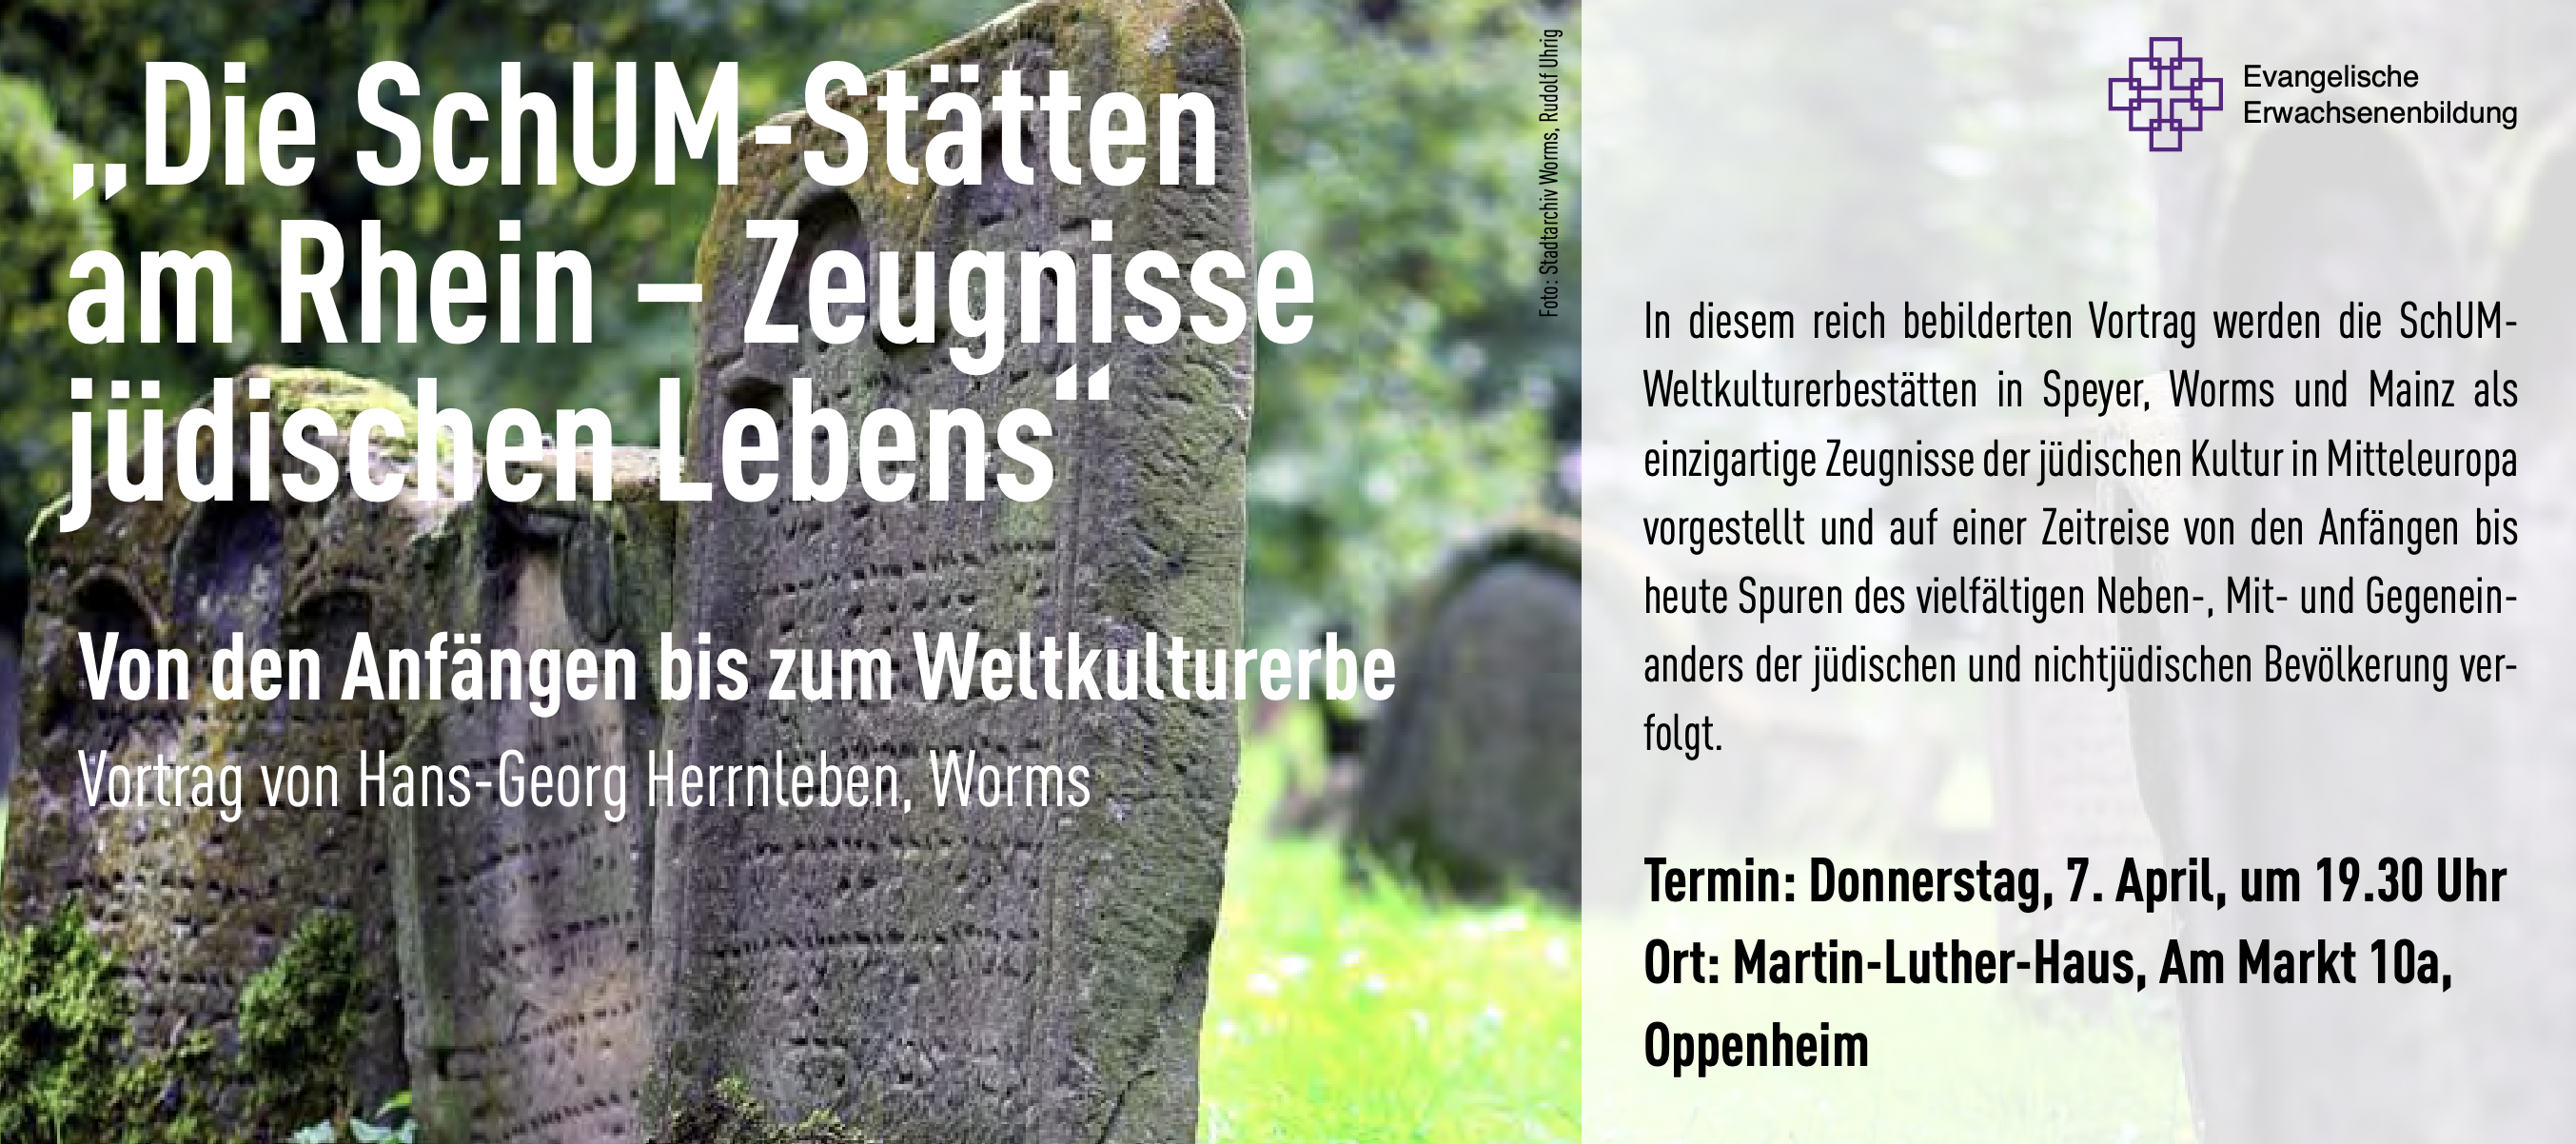 Vortrag zu den SchUM-Stätten am Rhein am 07. April in Oppenheim